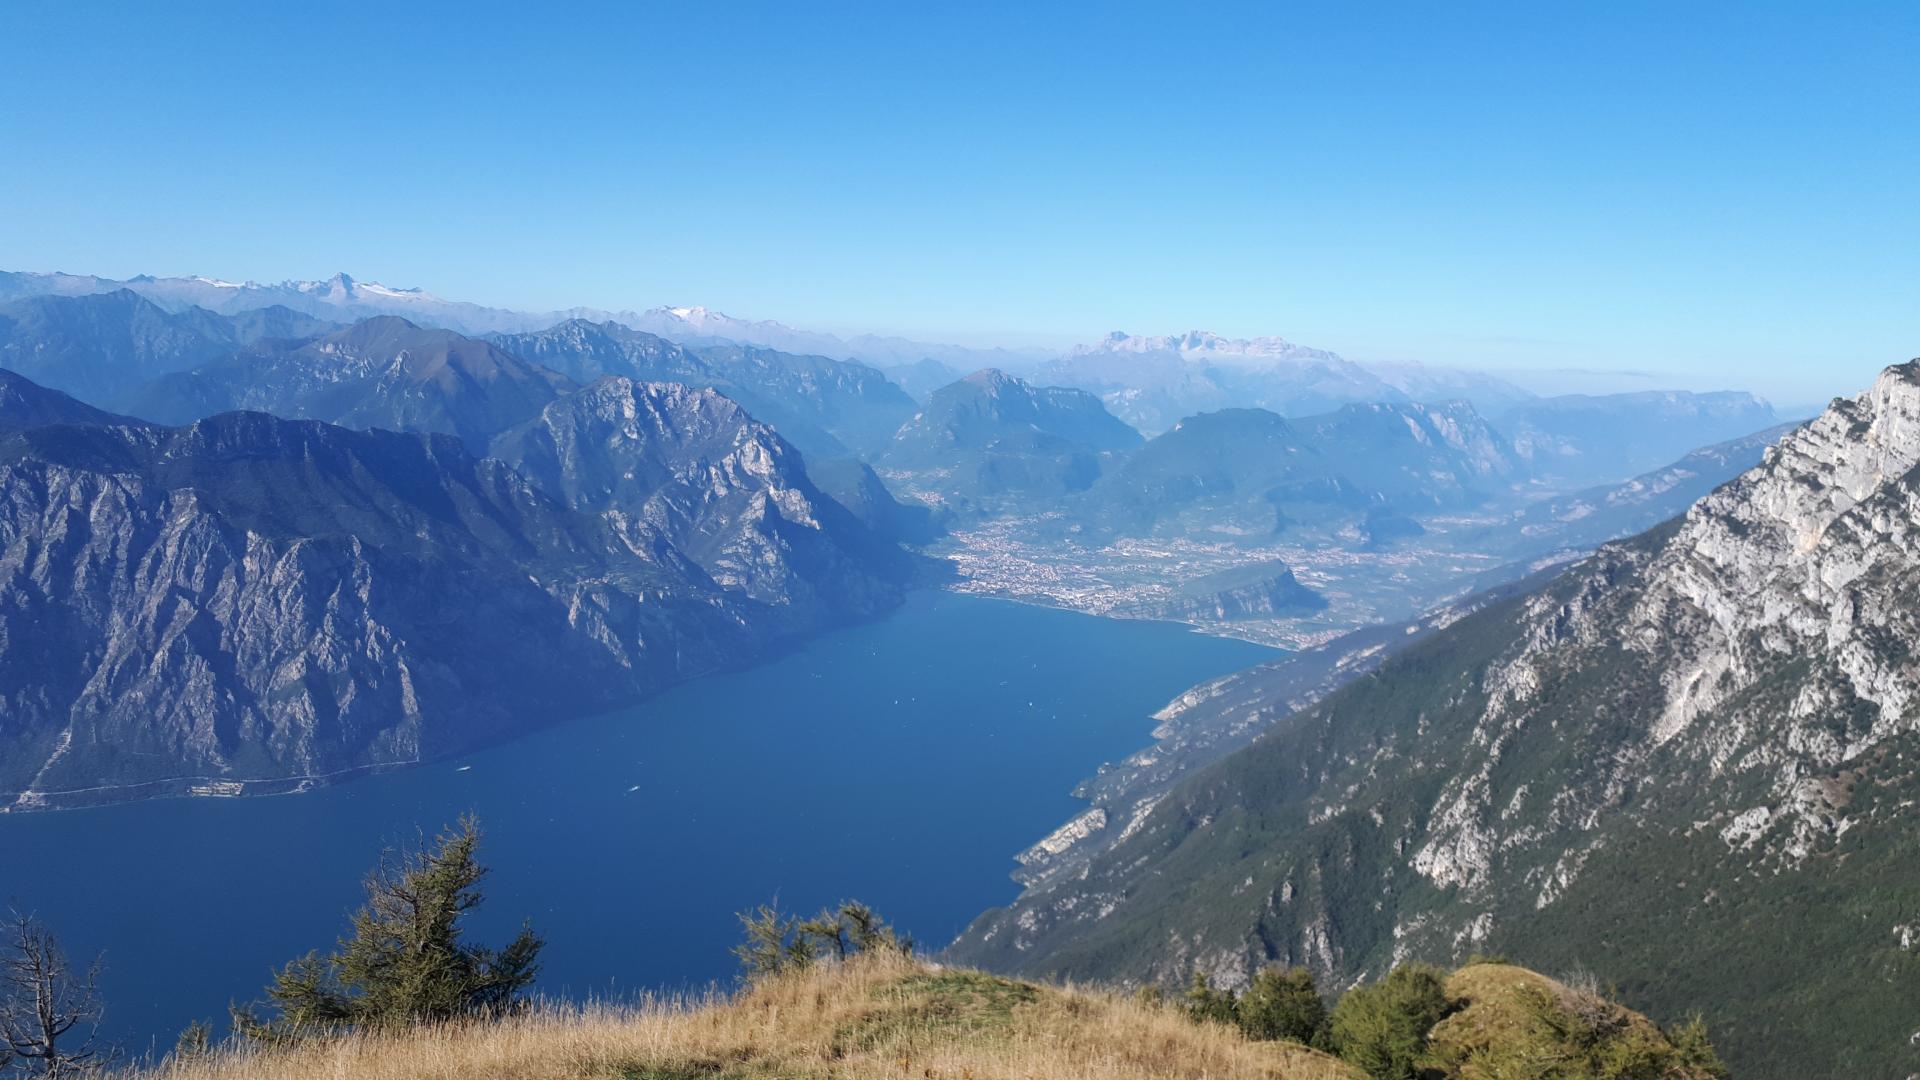 Lake Garda (Italy), where should I stay?